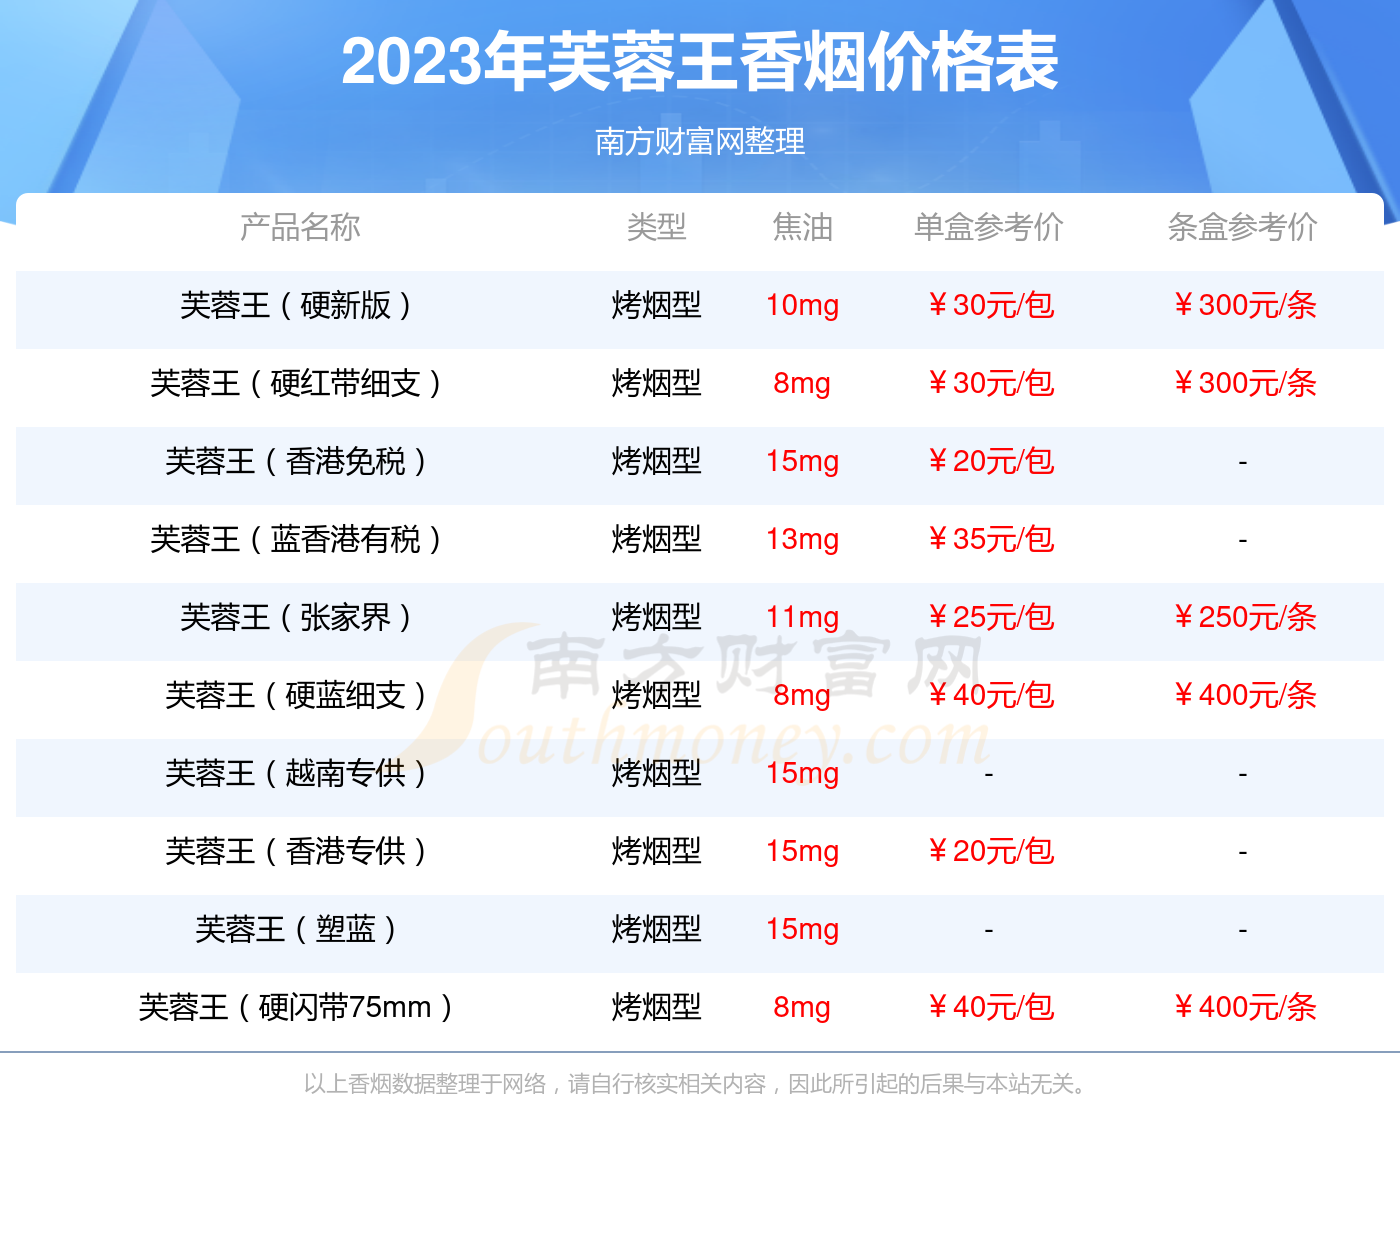 2020年芙蓉王价格图片